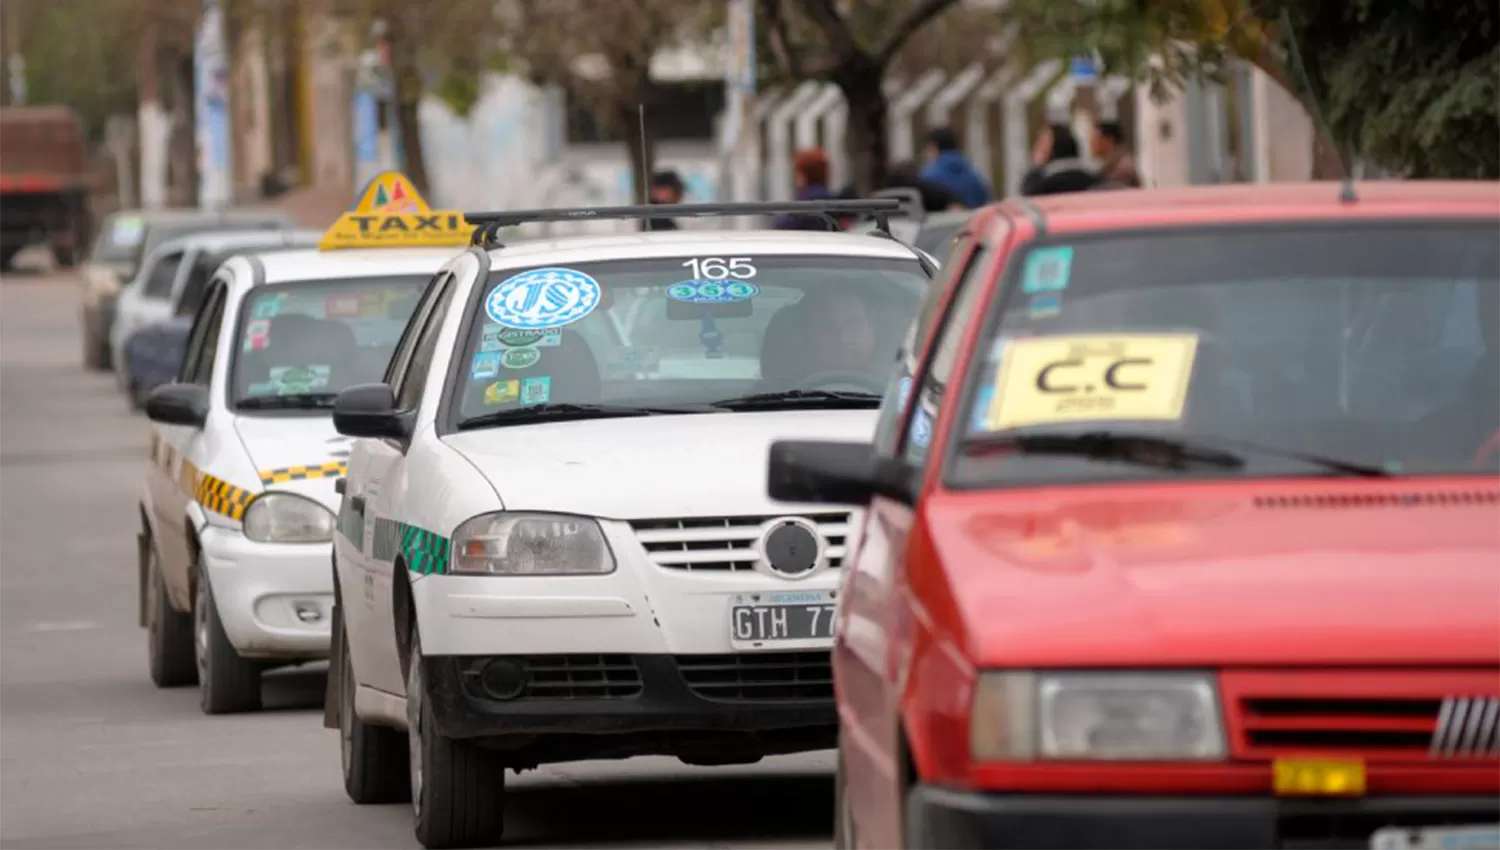 ACARREO DE VOTANTES. Los autos con identificaciones son habituales en Tucumán durante las elecciones. FOTO ARCHIVO